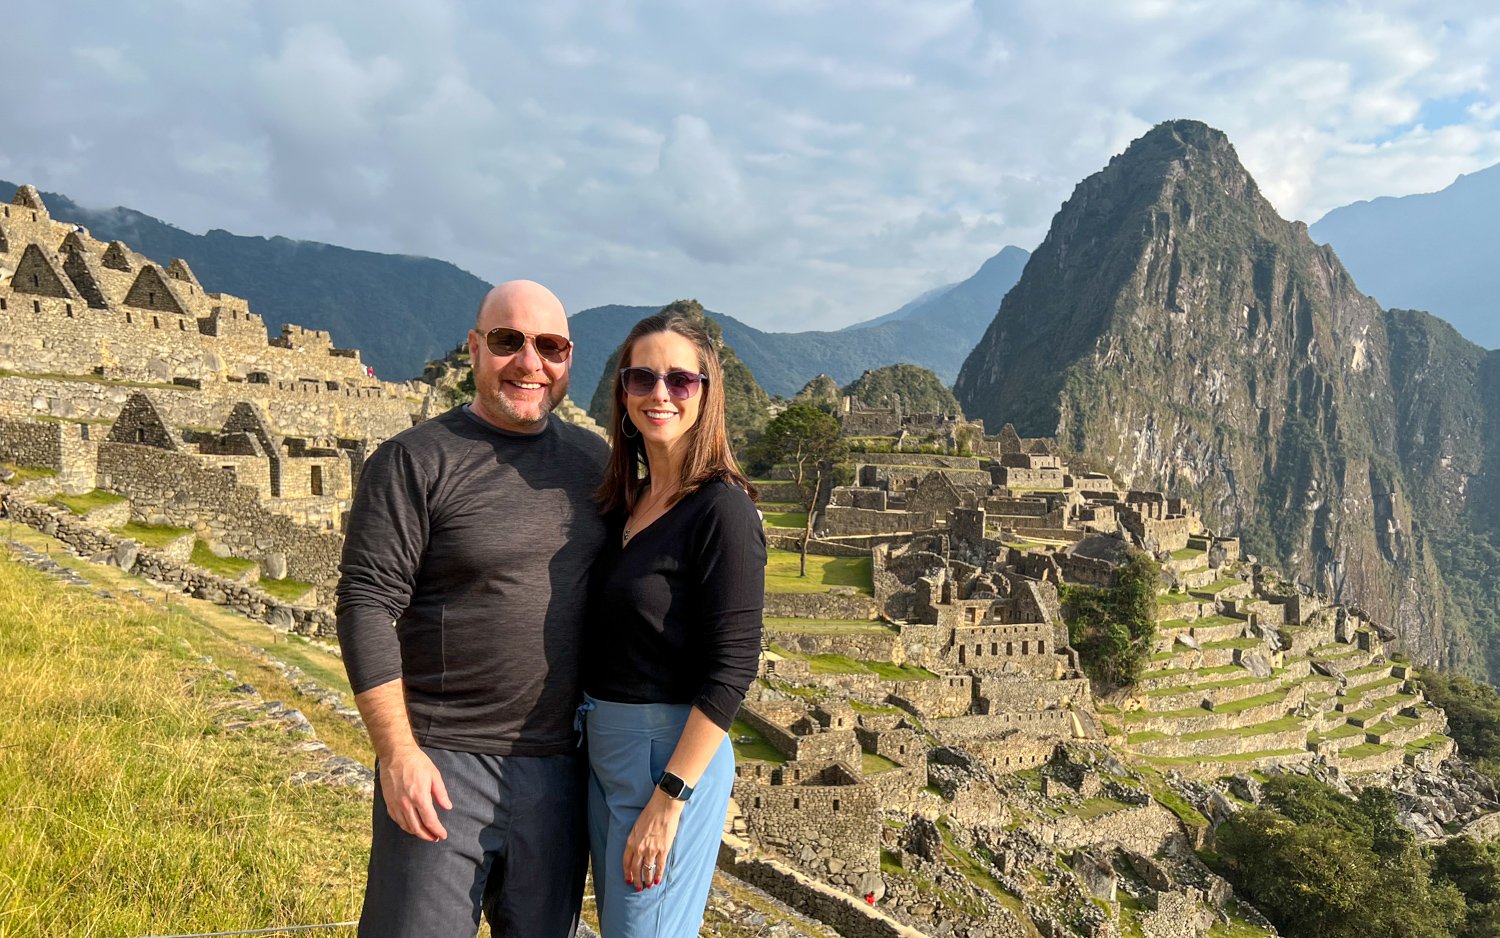 Dave and Kel at Machu Picchu in Peru